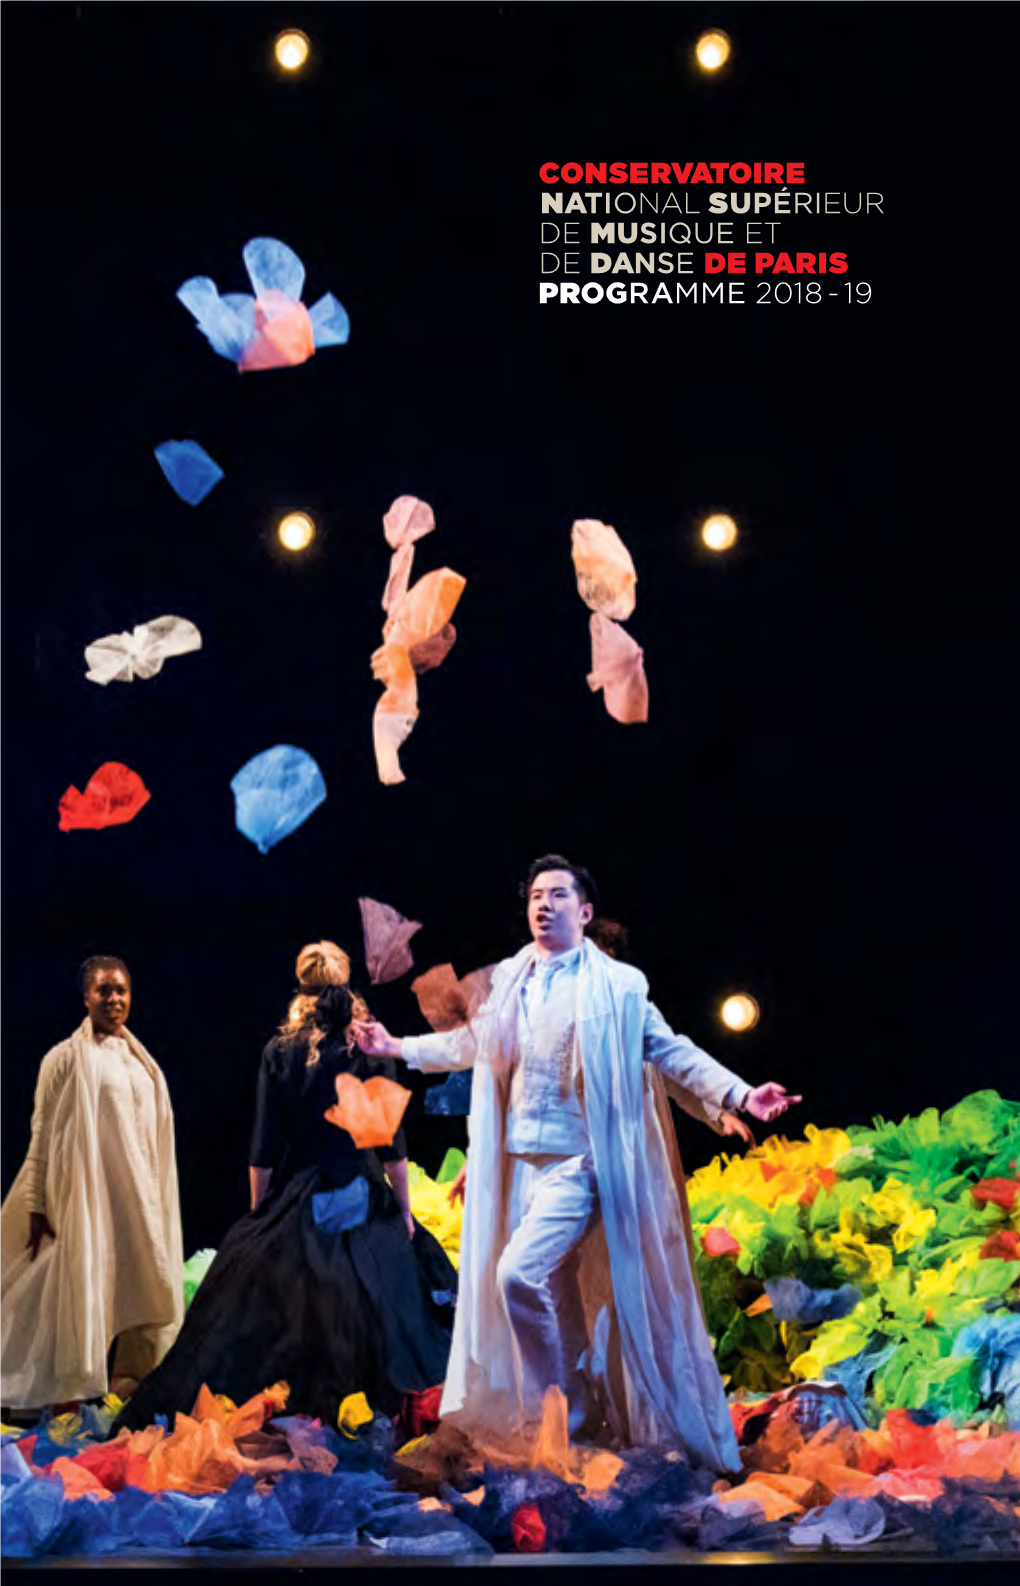 Conservatoire National Supérieur De Musique Et De Danse De Par I S Programme 2018 - 19 Saison 2018–19 L'année Des Lumières